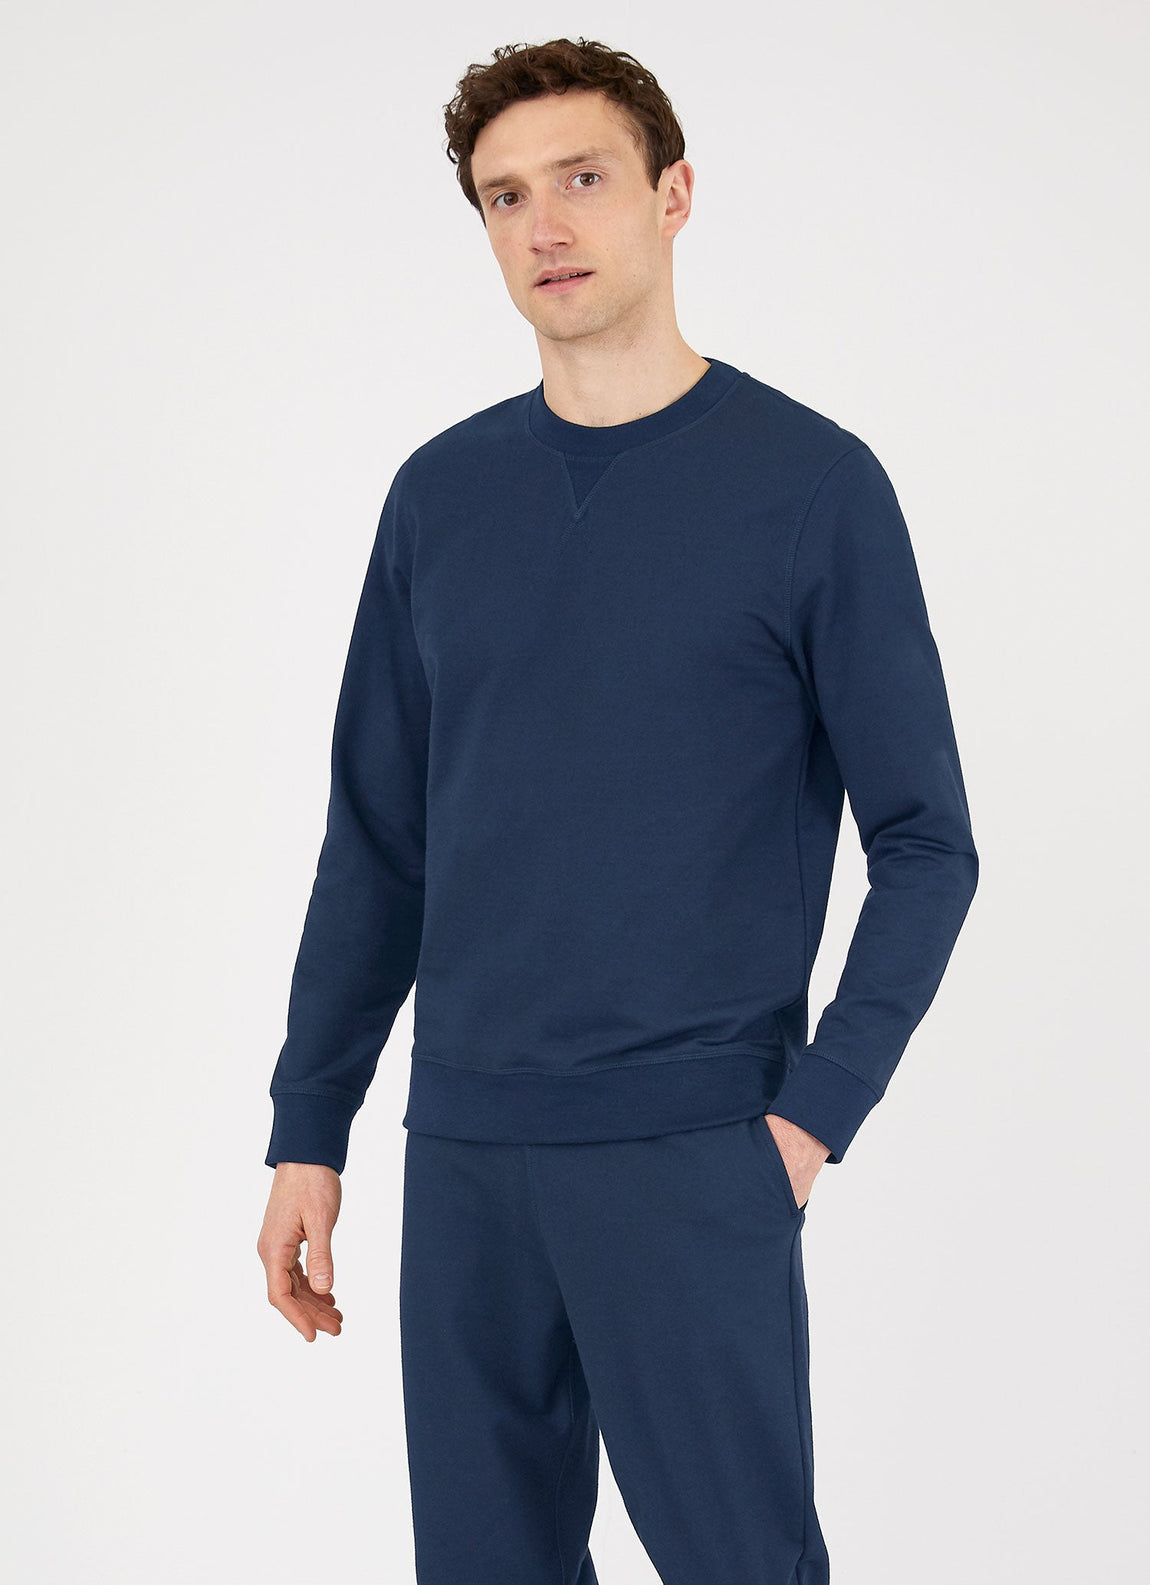 Men's DriRelease Active Sweatshirt in Marine Blue